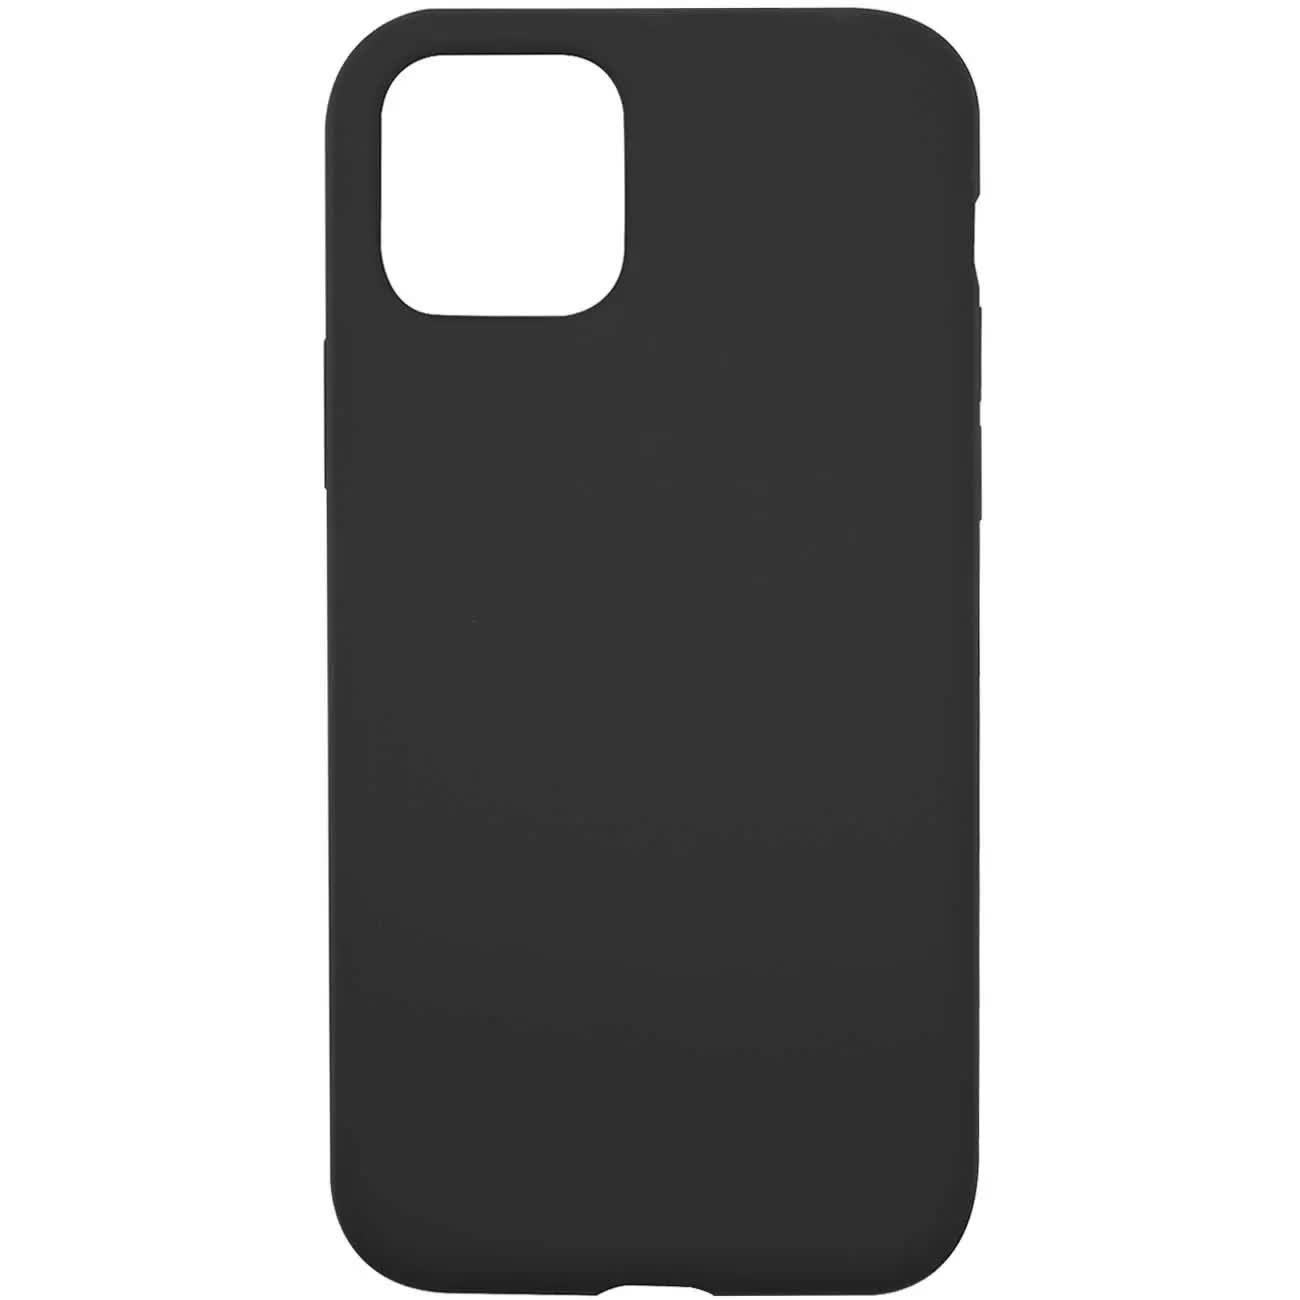 Чехол накладка силикон с микрофиброй Auckland для iPhone 11 Pro (5.8) with 4 sides, черный чехол накладка силикон с микрофиброй auckland для iphone 11 pro 5 8 with 4 sides черный